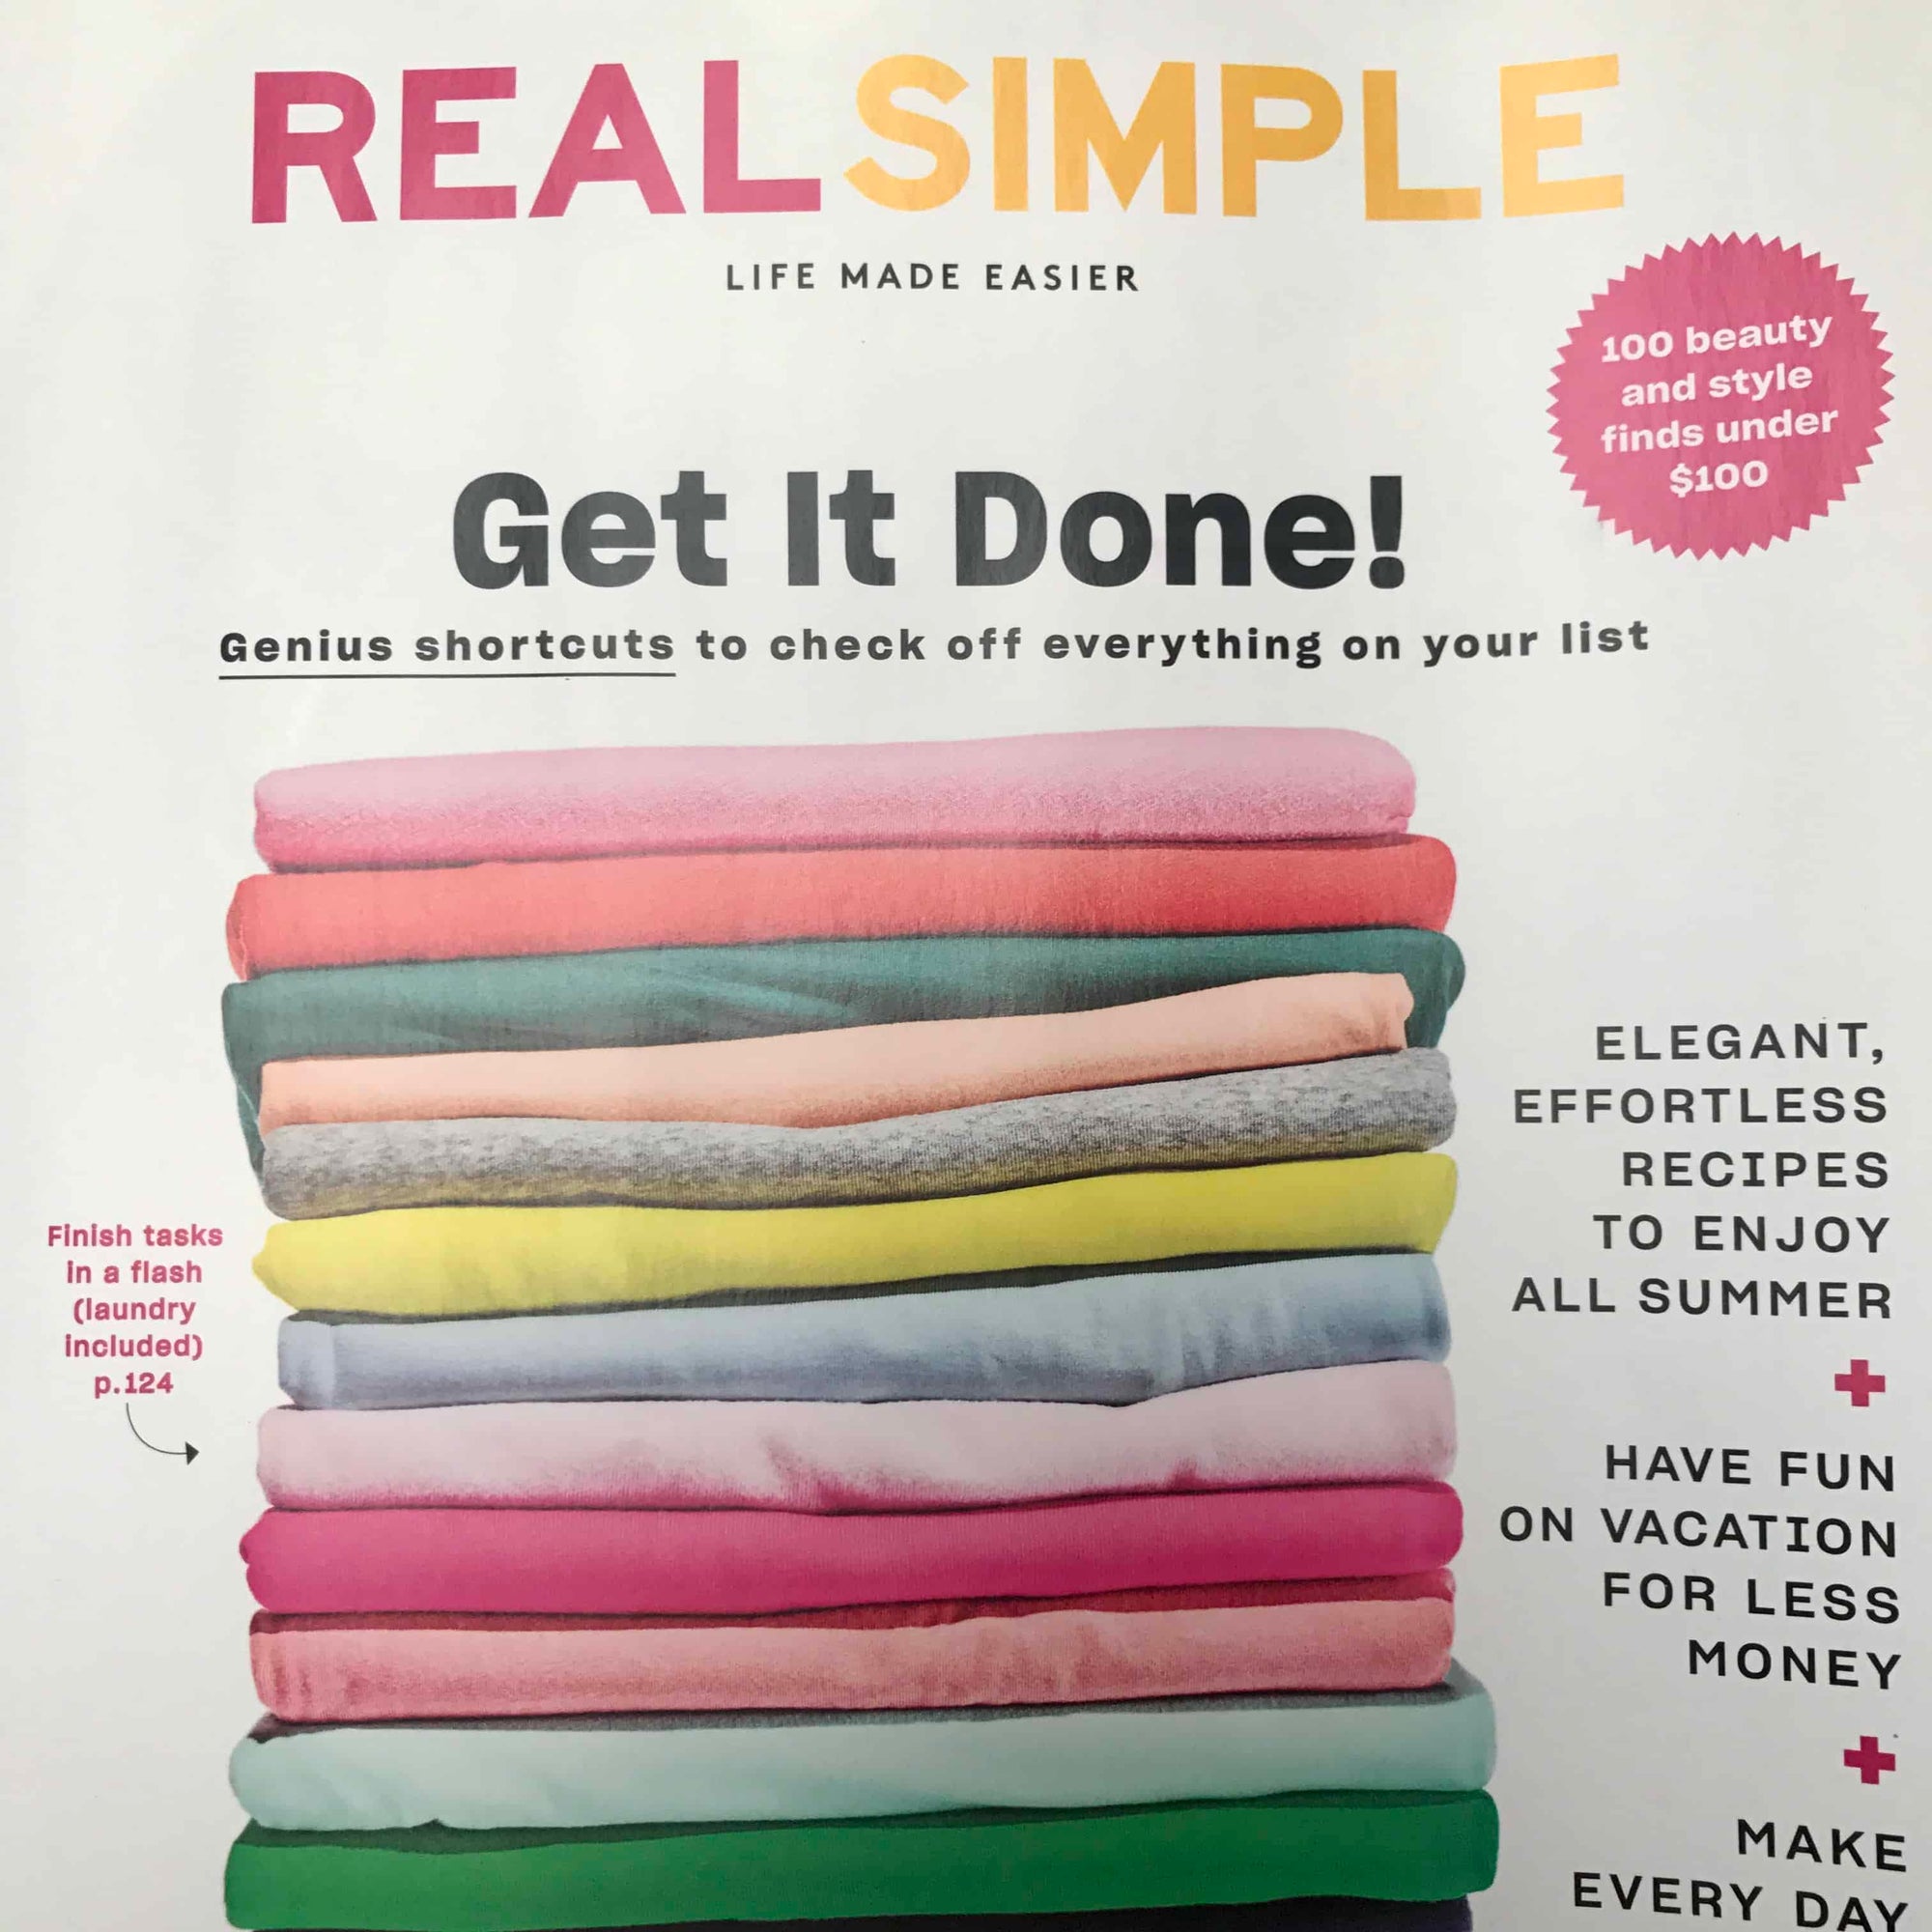 Questa è un'immagine della copertina di Real Simple.